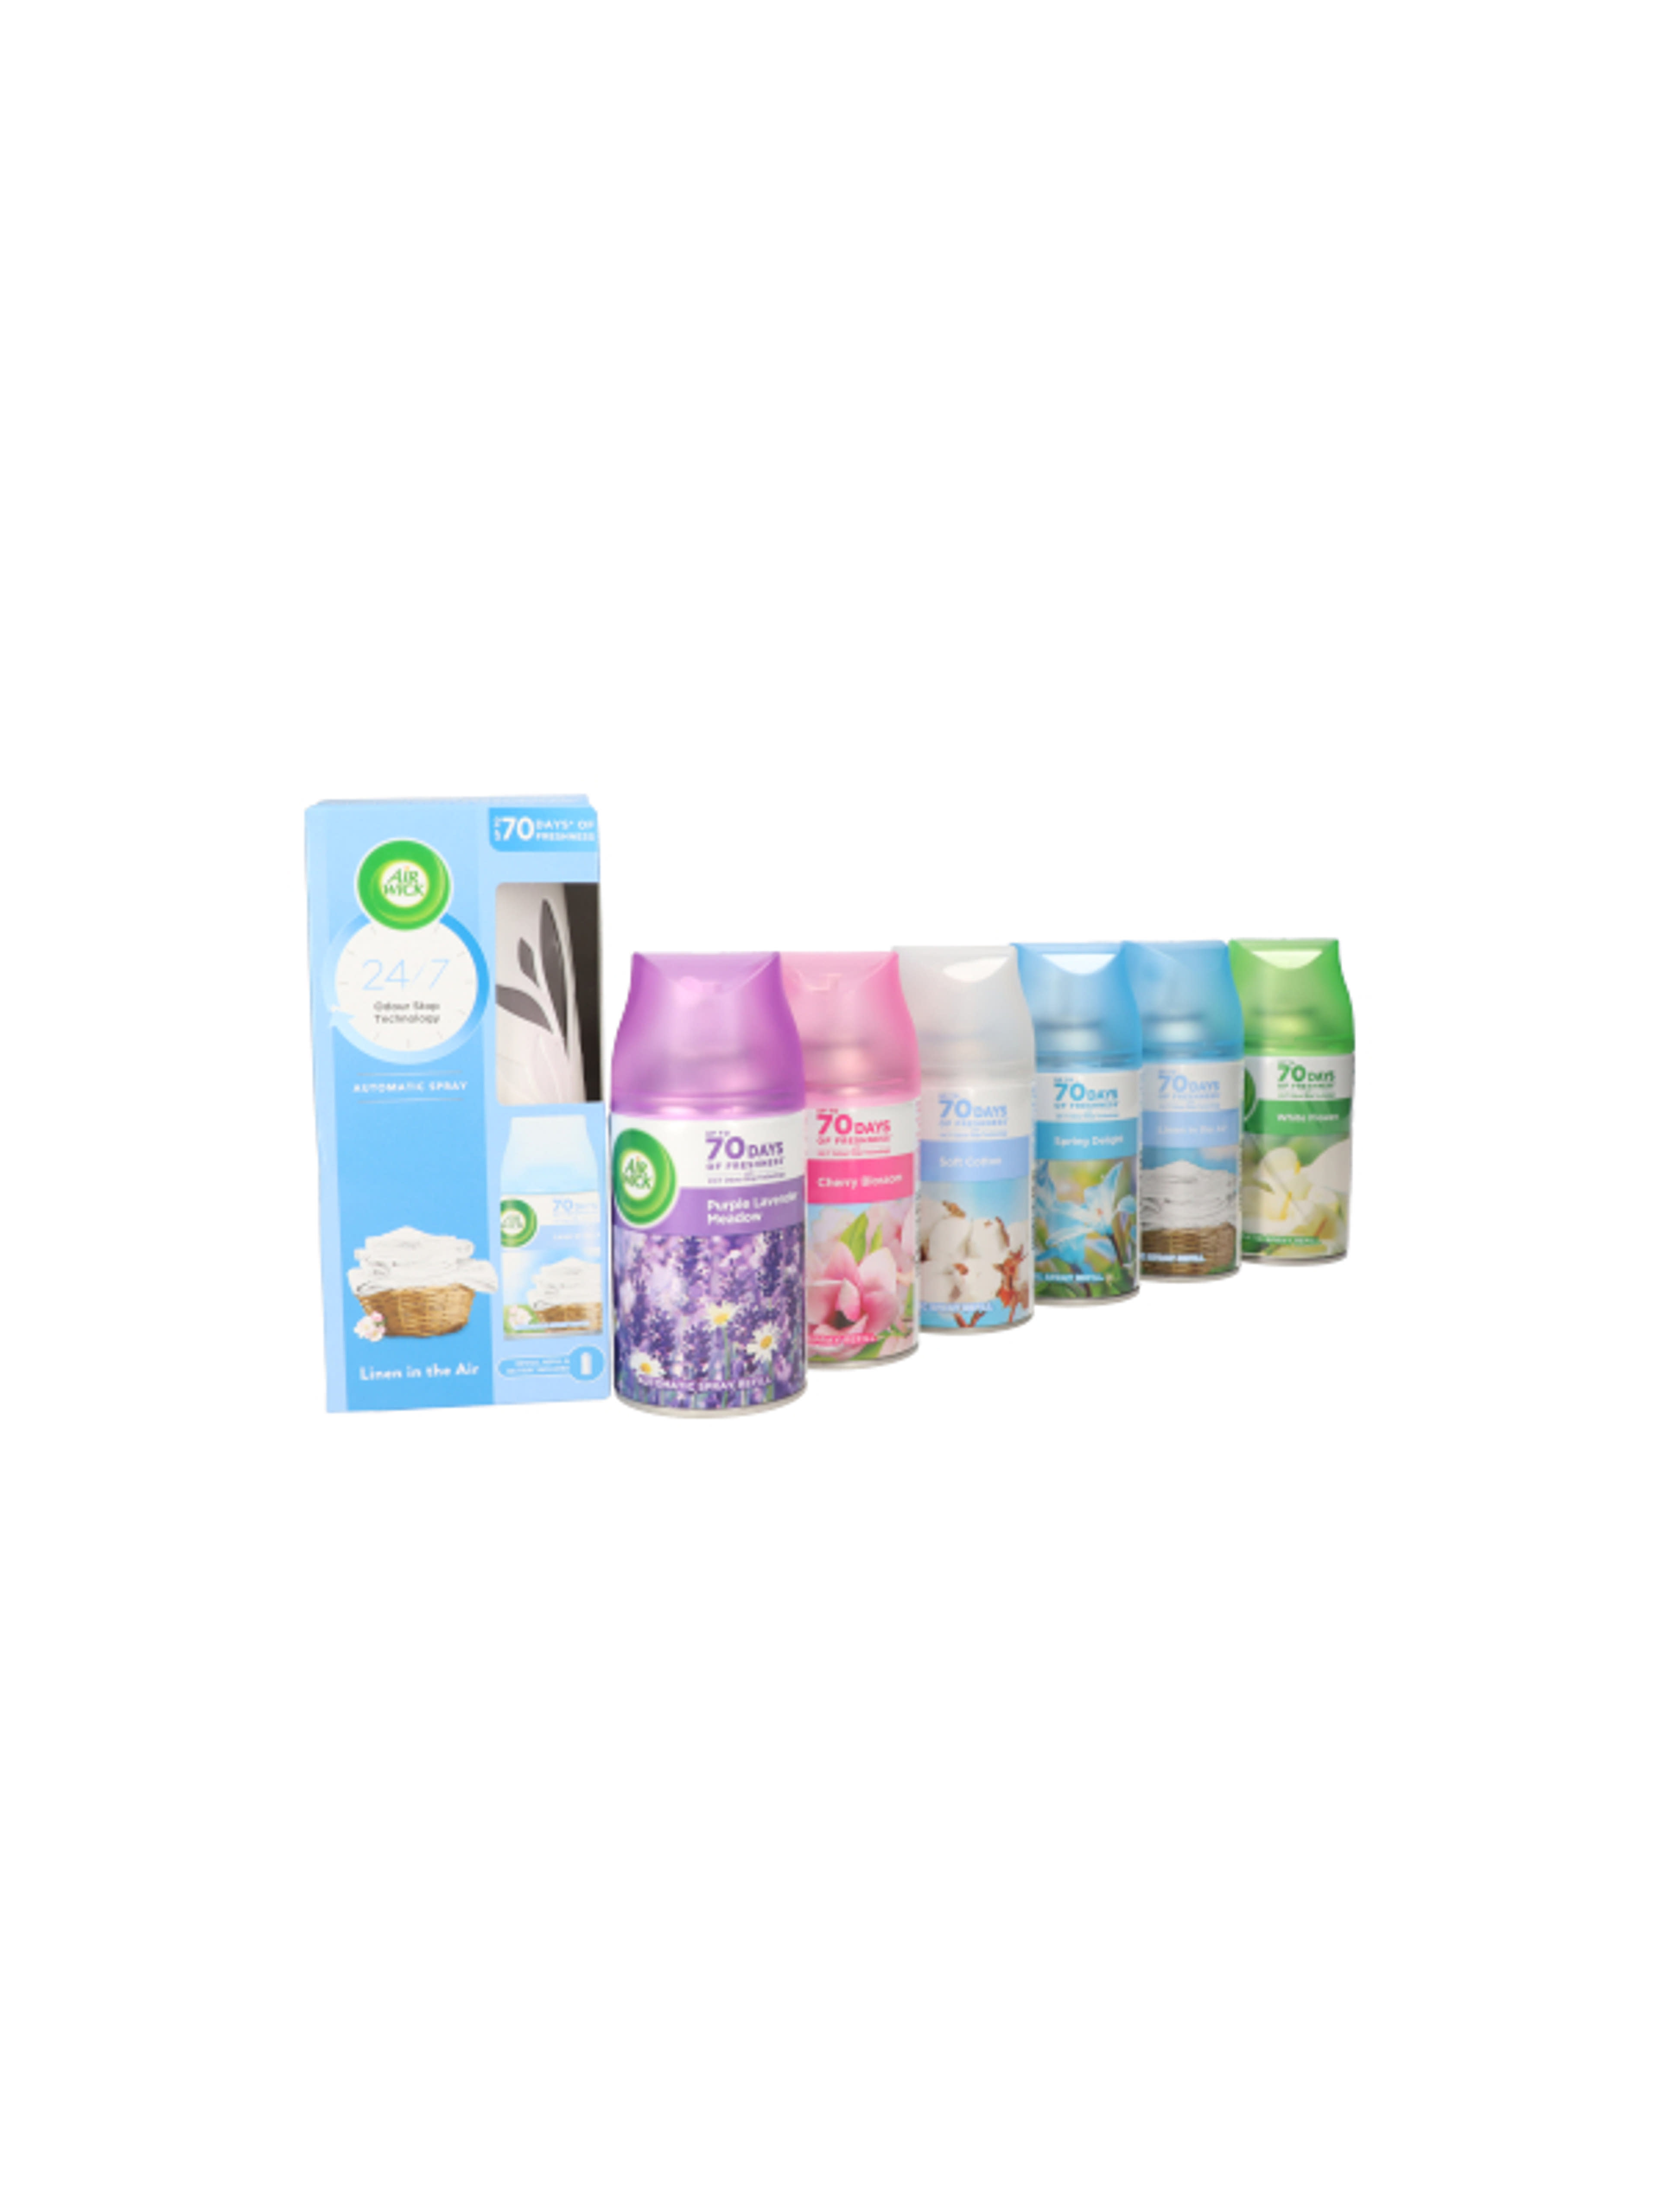 Air Wick Freshmatic Life Scents légfrissítő csomag, 6 db utántöltő (különböző illatokban) + készülék - 1 db-1